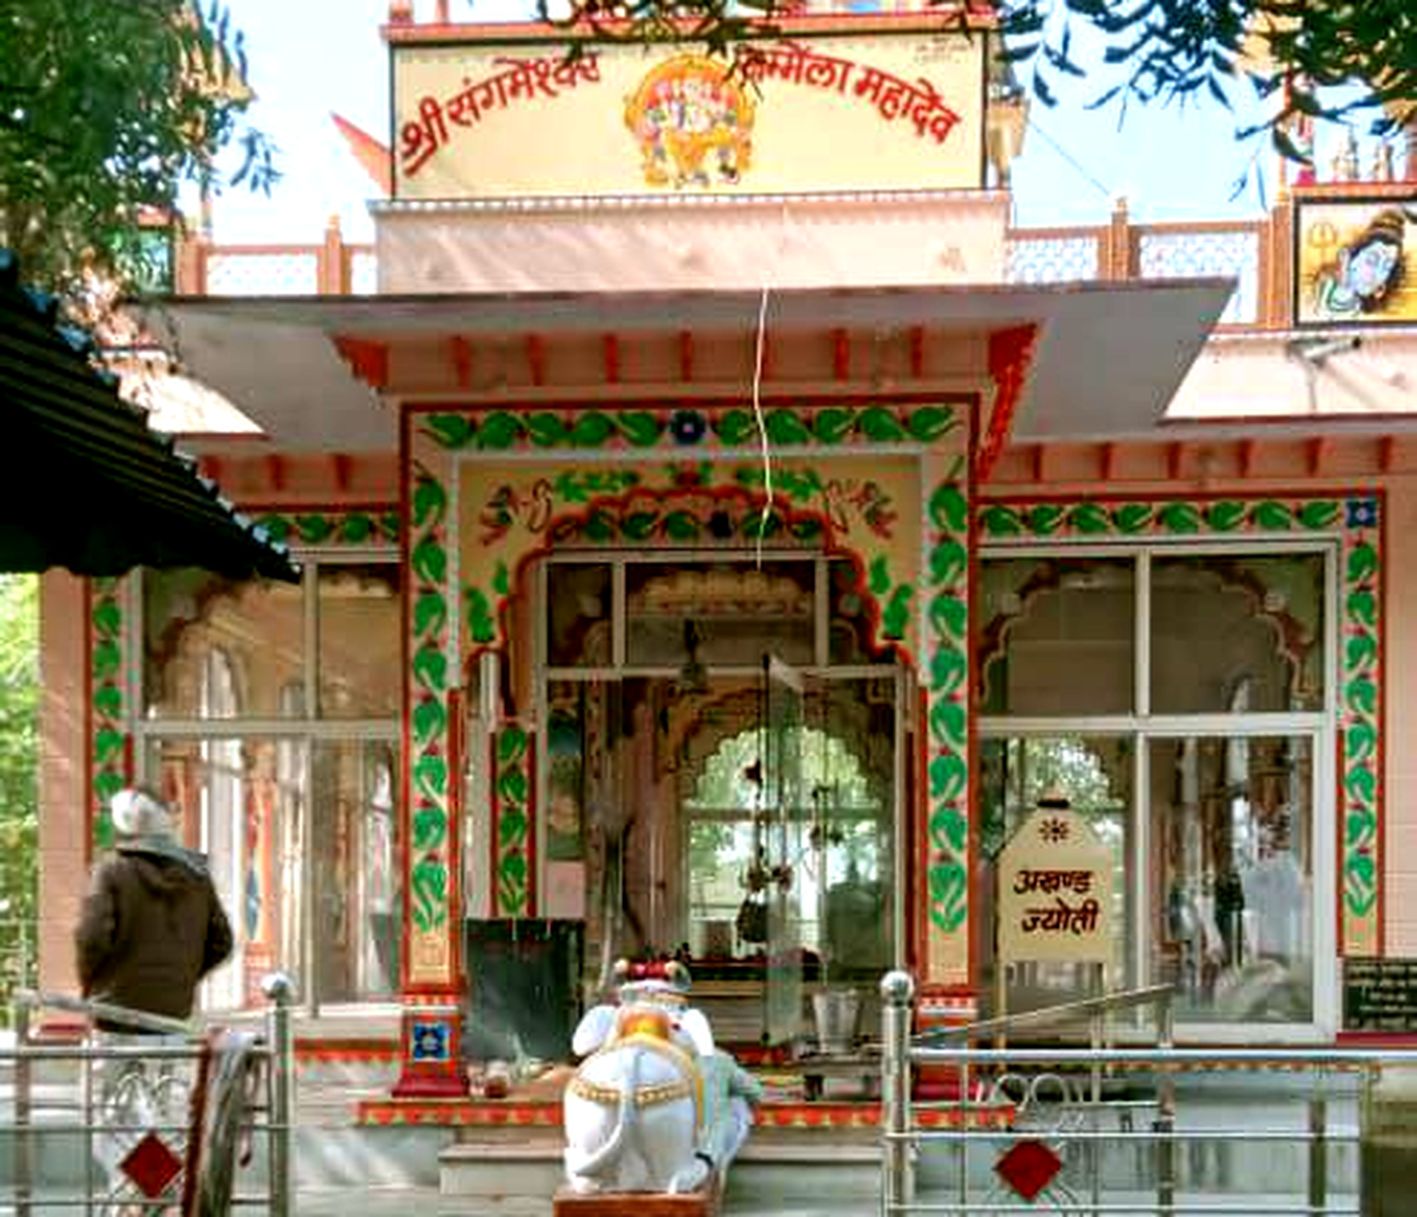 बारह गांवों का आस्था स्थल है समेला महादेव मंदिर